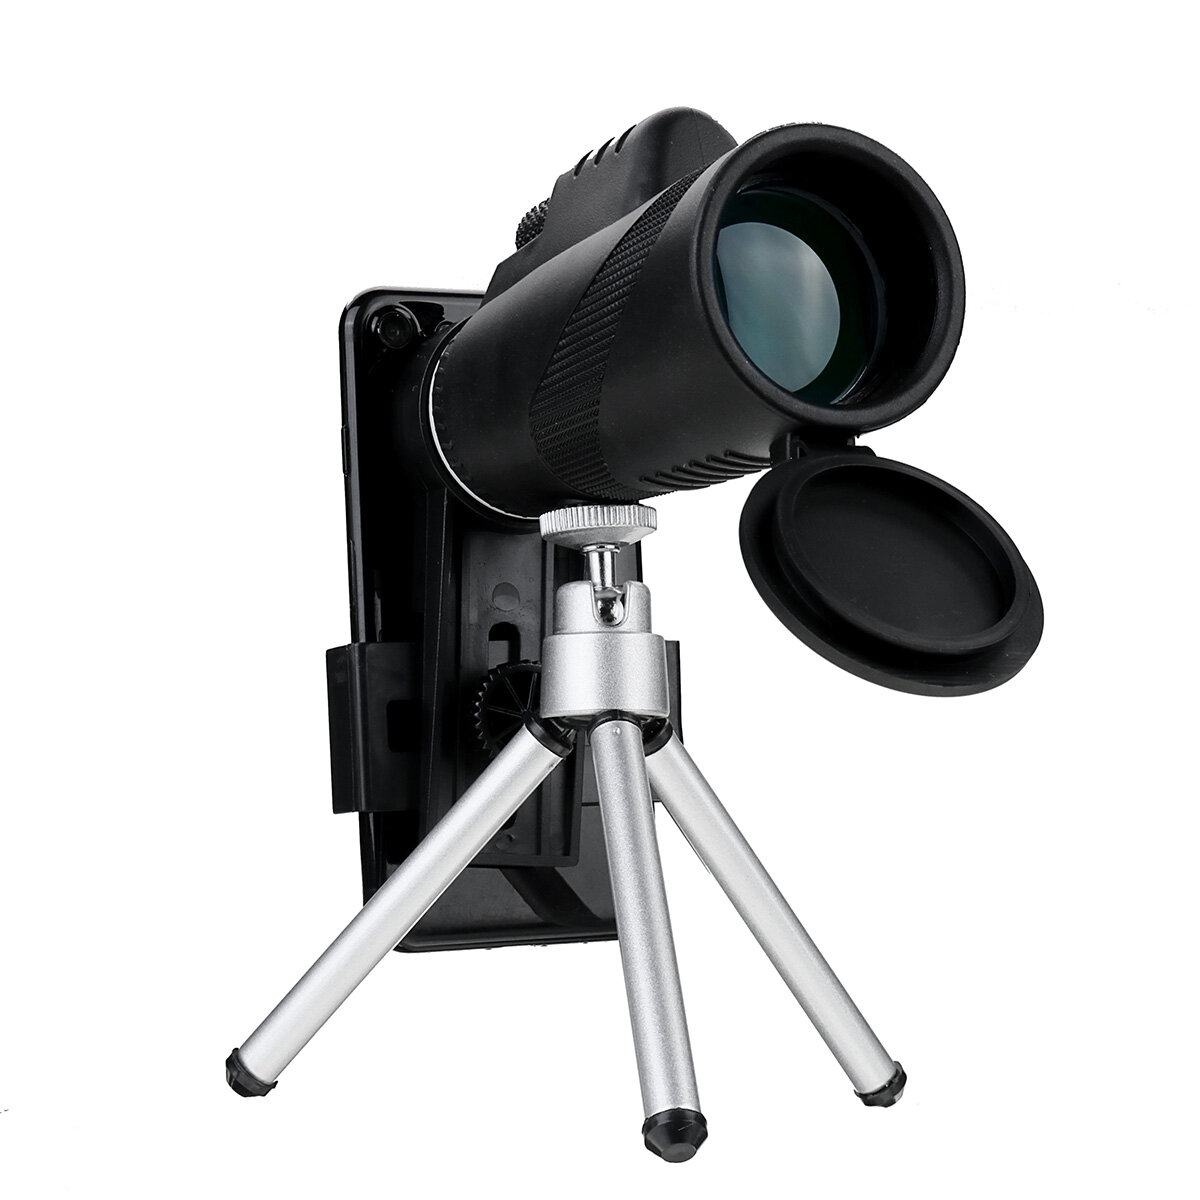 80X Telefoon Telescoop Set Volwassen HD Monoculair met Statief + Telefoon Adapter voor Reizen Vogels Kijken Kamperen Reizen.